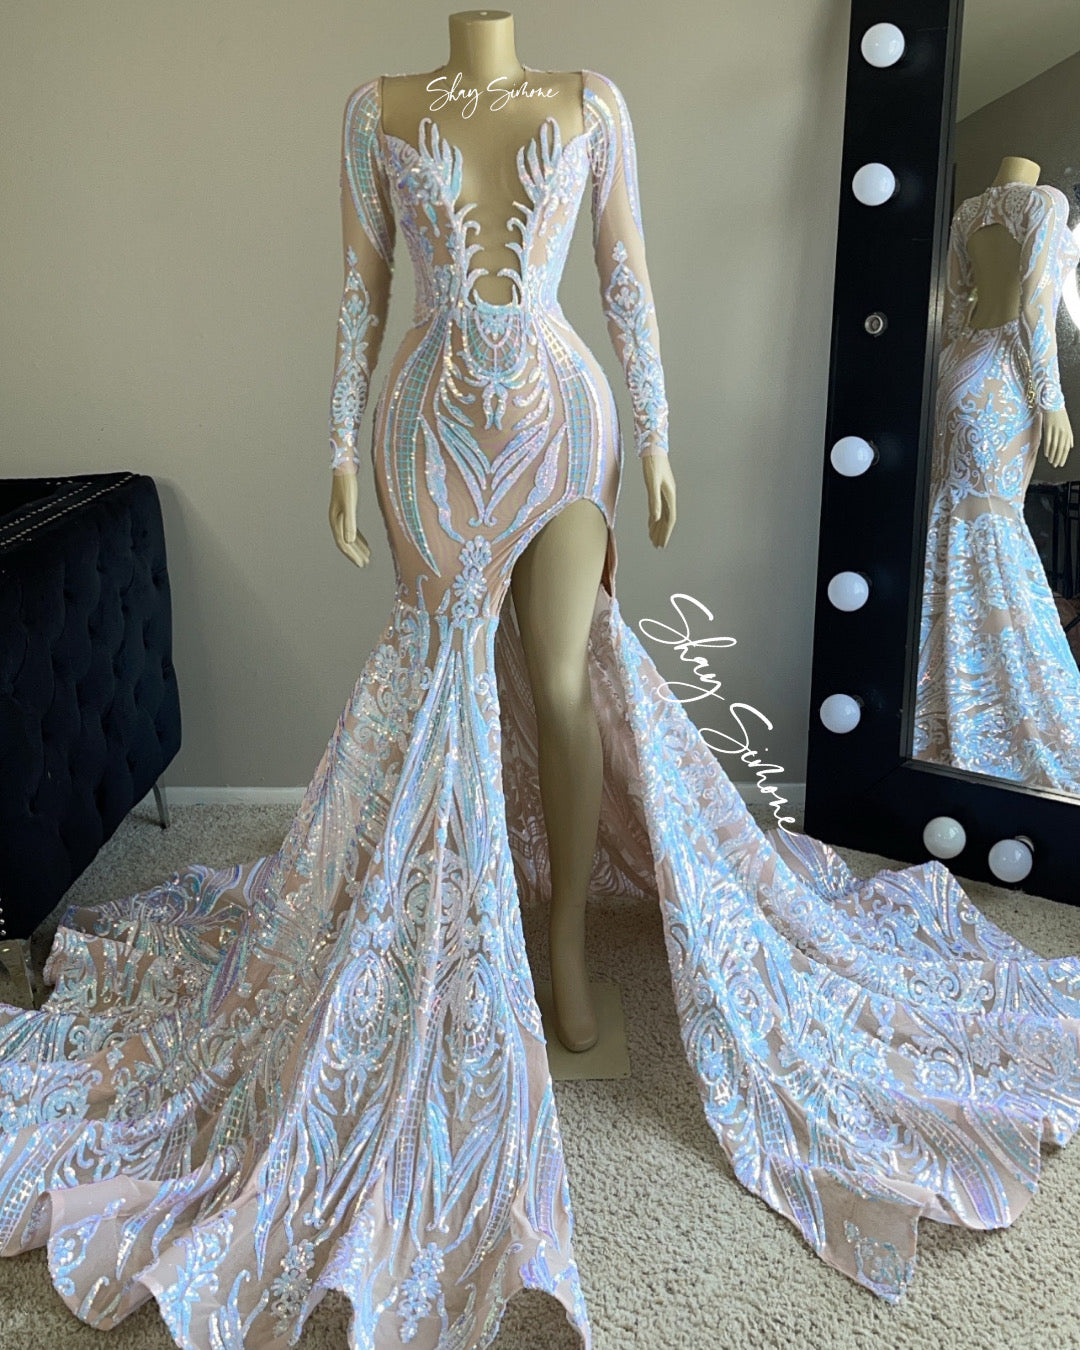 The Iridescent Mermaid Dress